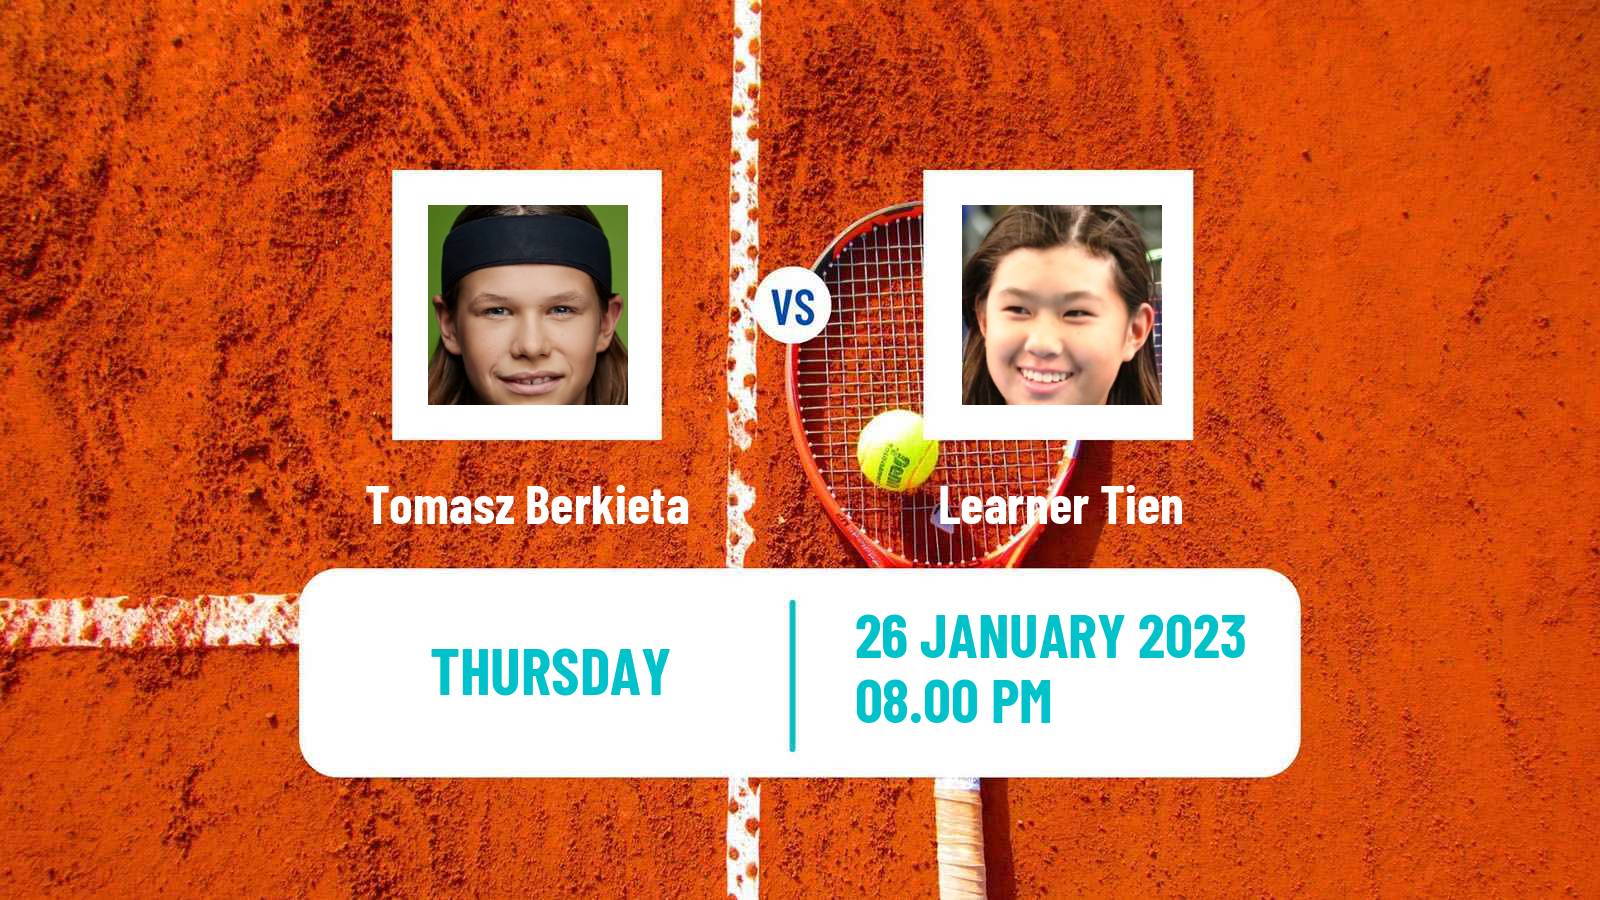 Tennis Boys Singles Australian Open Tomasz Berkieta - Learner Tien